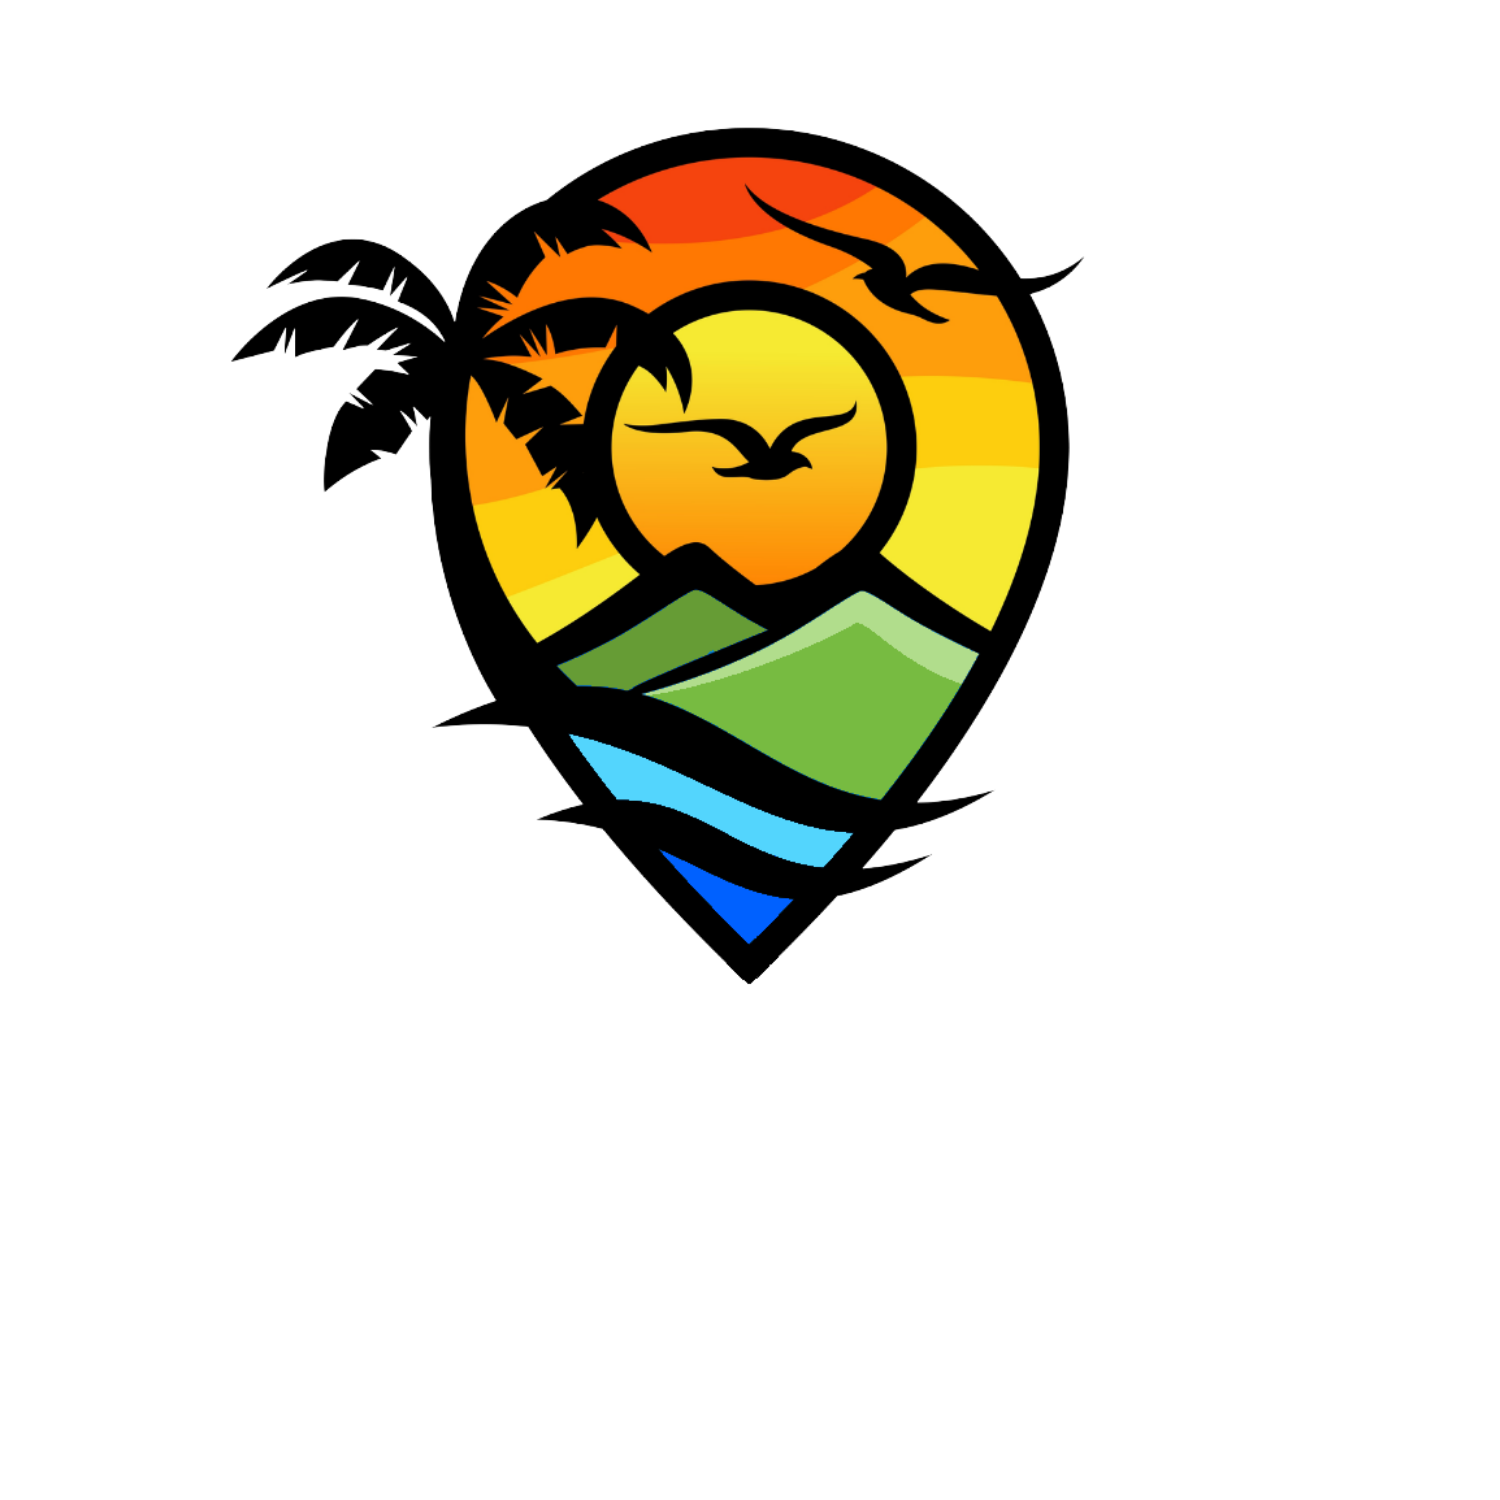 Channin Bodden Tours